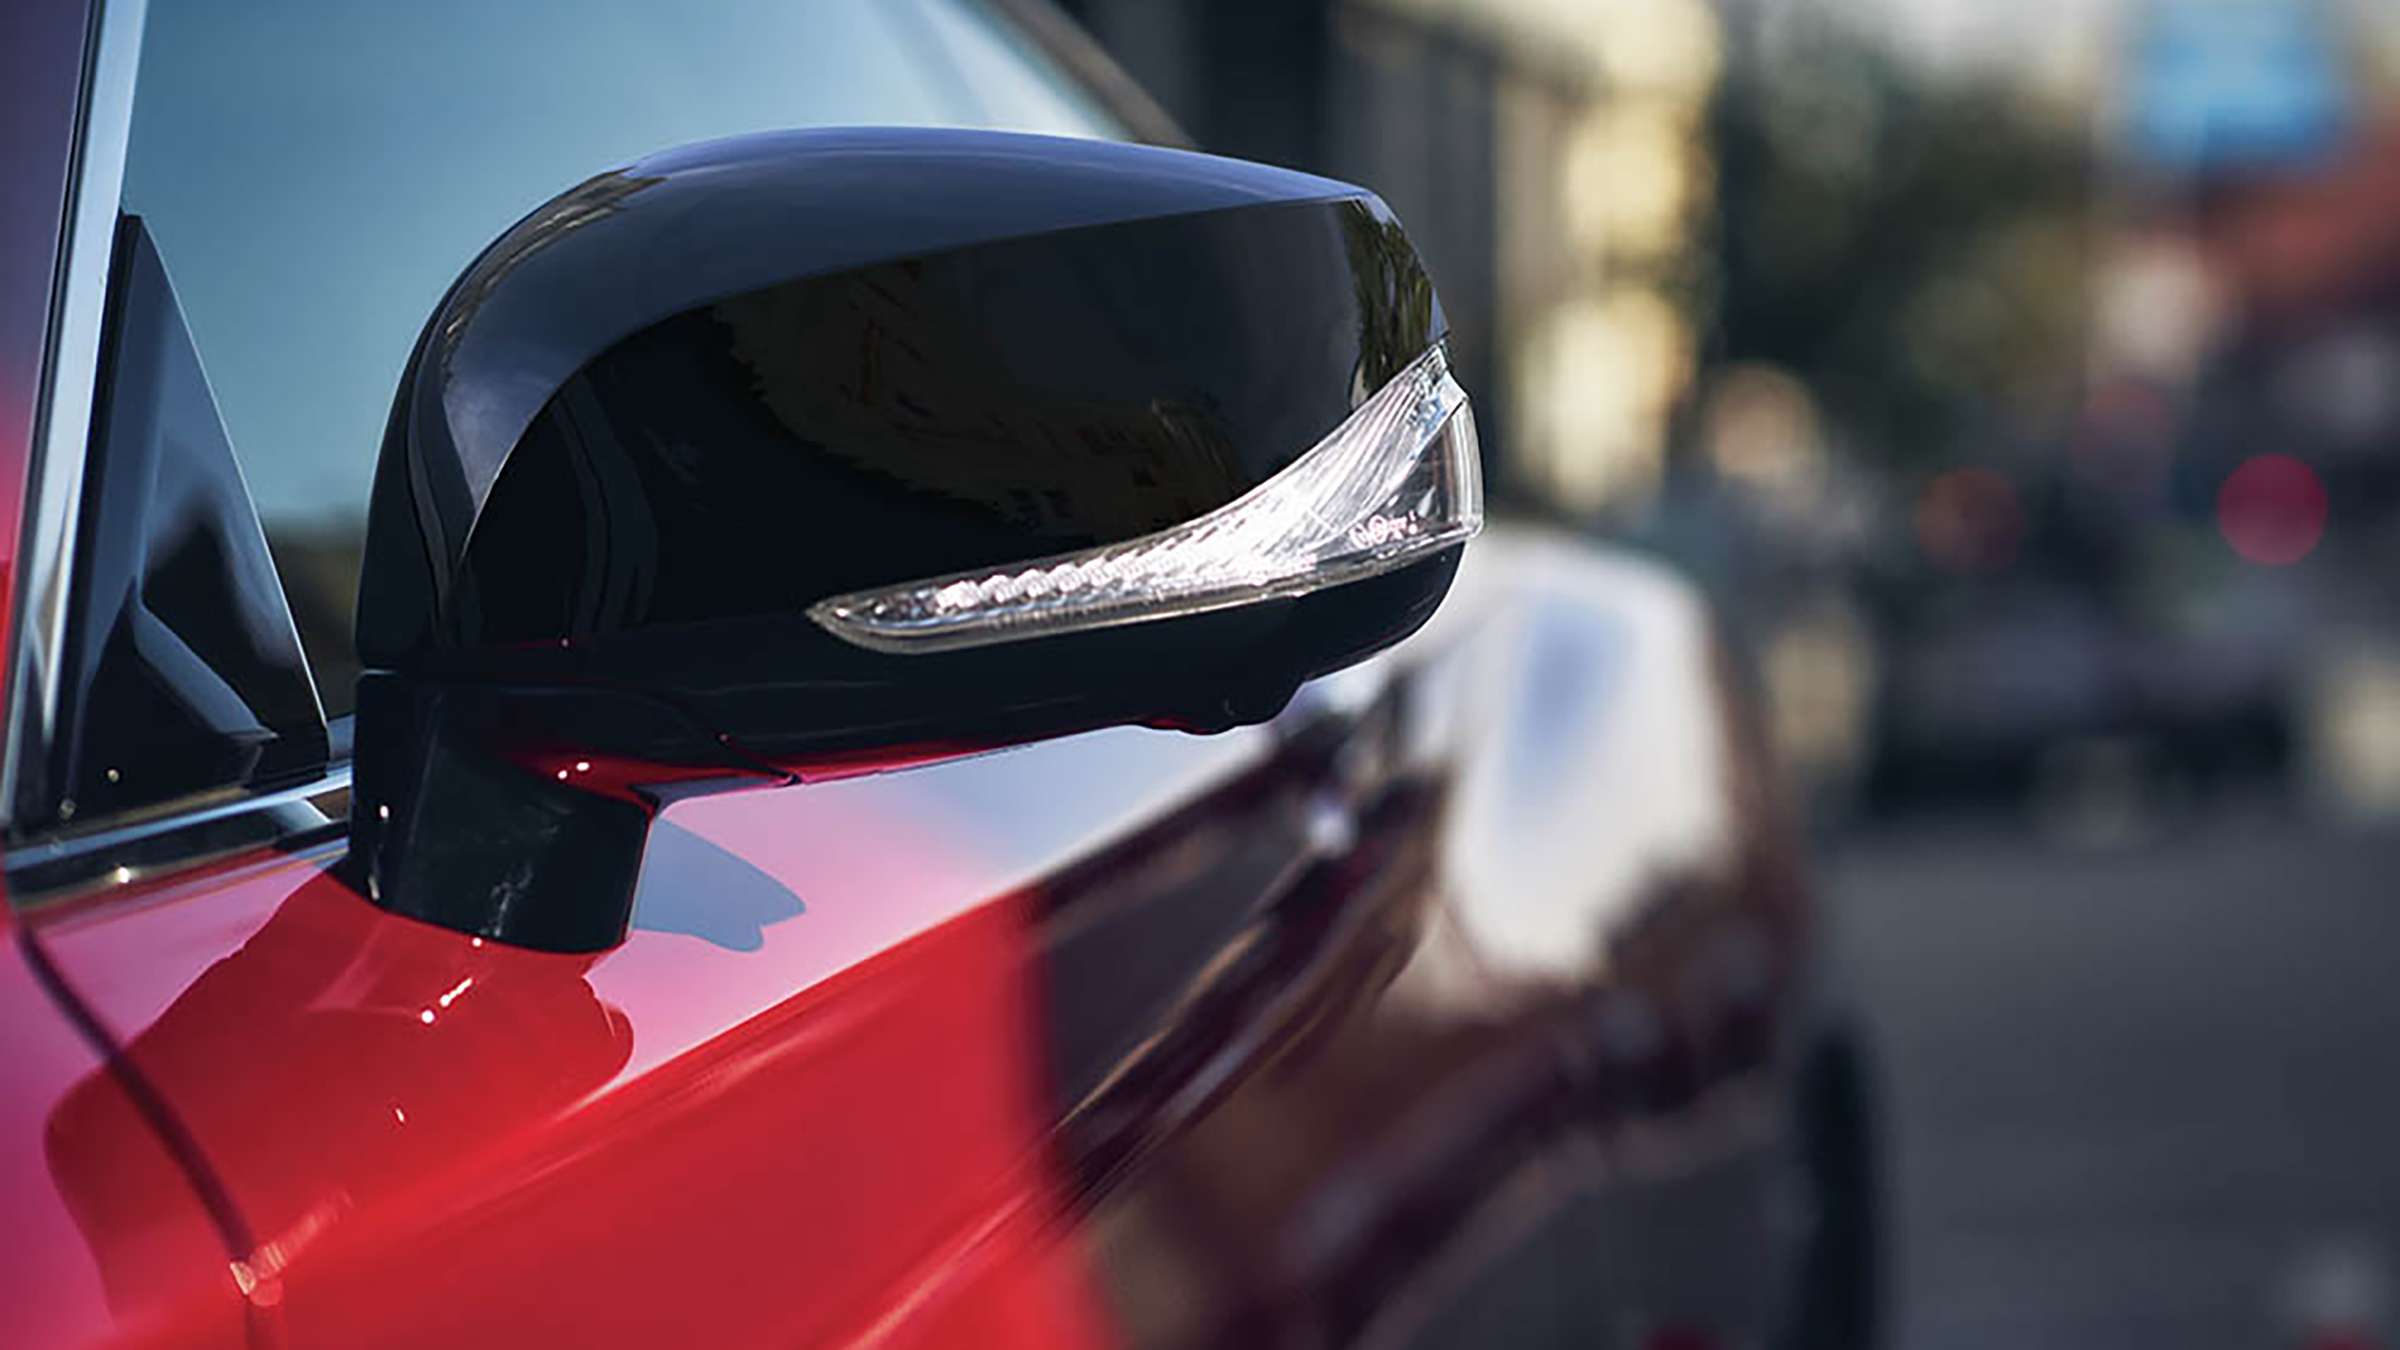 2022 INFINITI Q60 red car black mirror caps.